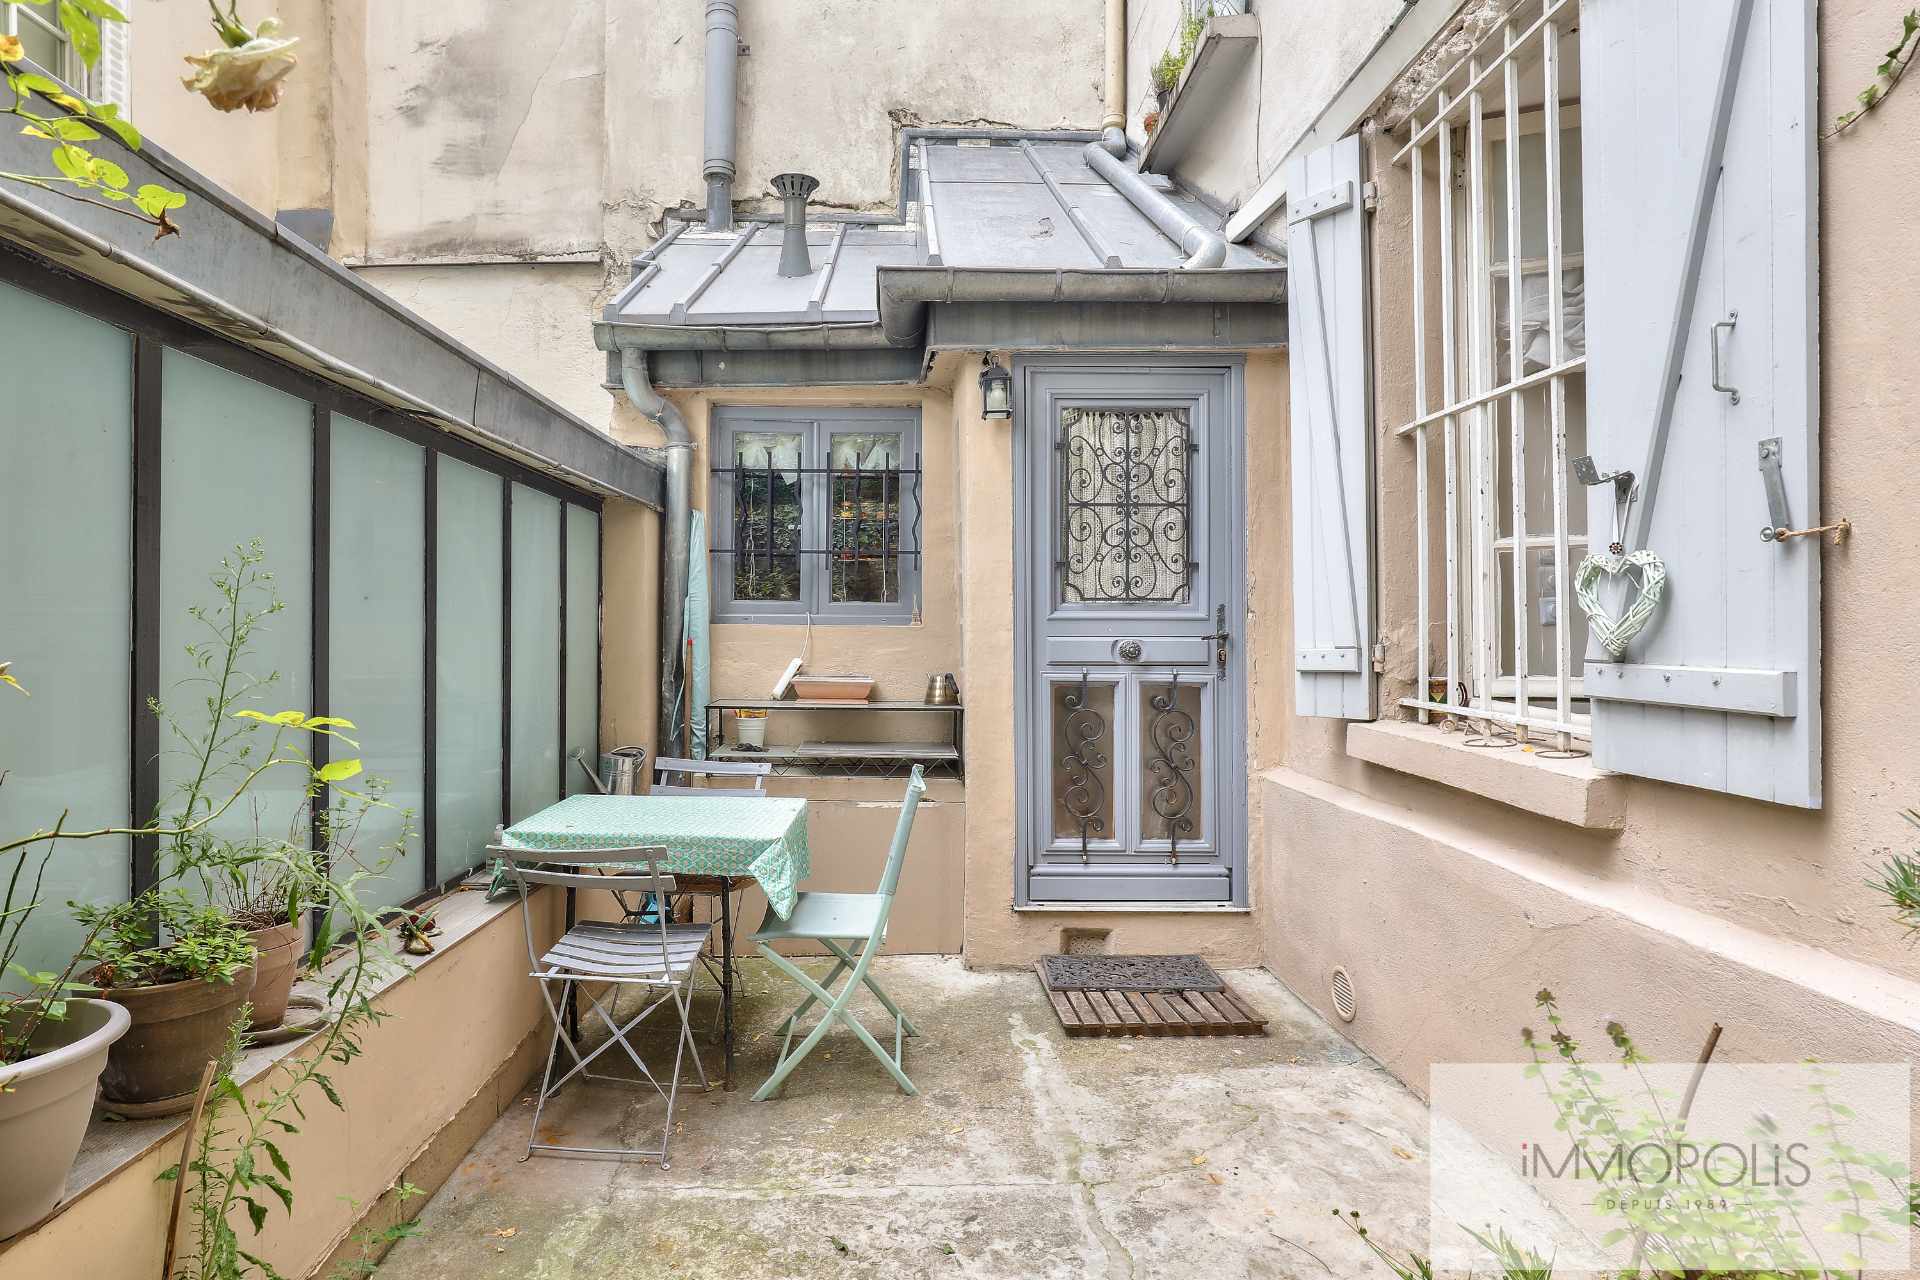 Montmartre, rue Gabrielle, magnifique 2 pièces entièrement rénové avec pierres, briques et poutres apparentes : comme une maison ! 1